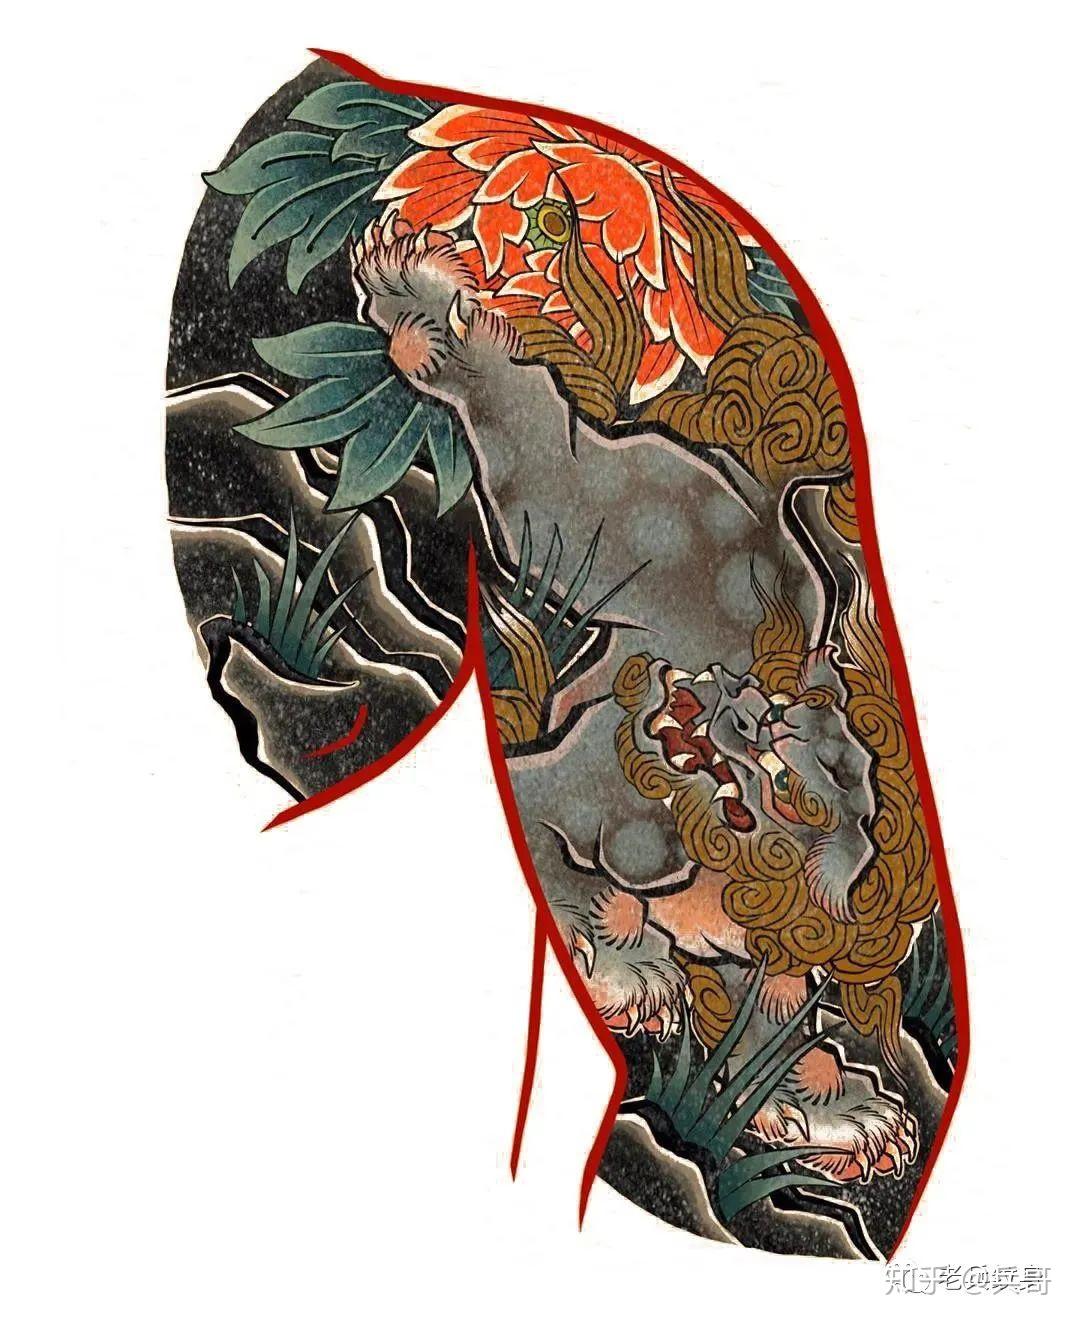 日式七分袖纹身手稿-图库-五毛网